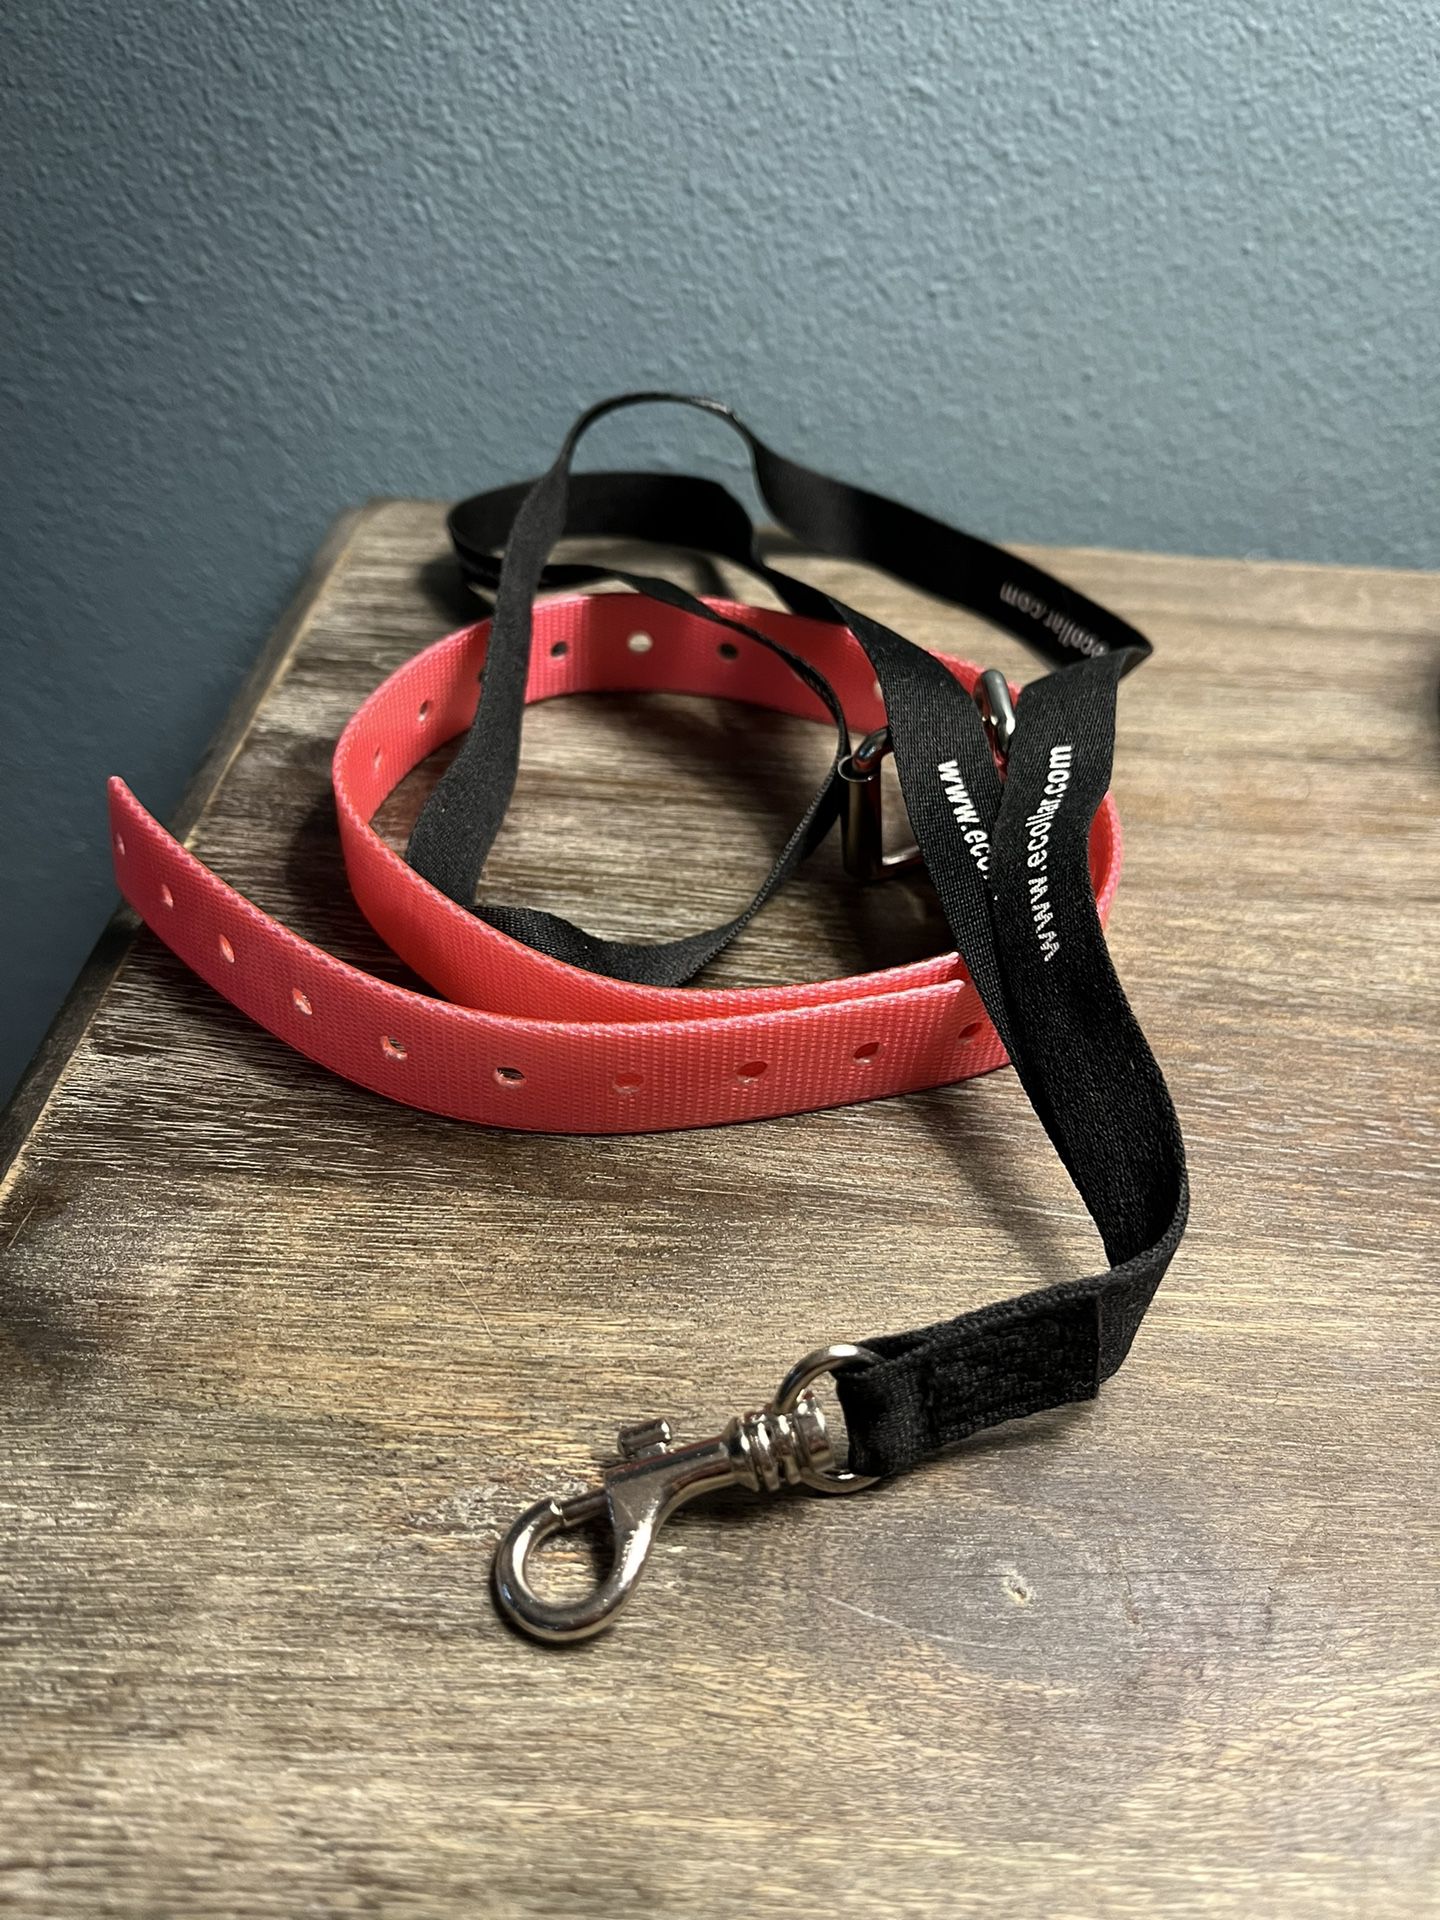 Dog E-collar And Remote Strap